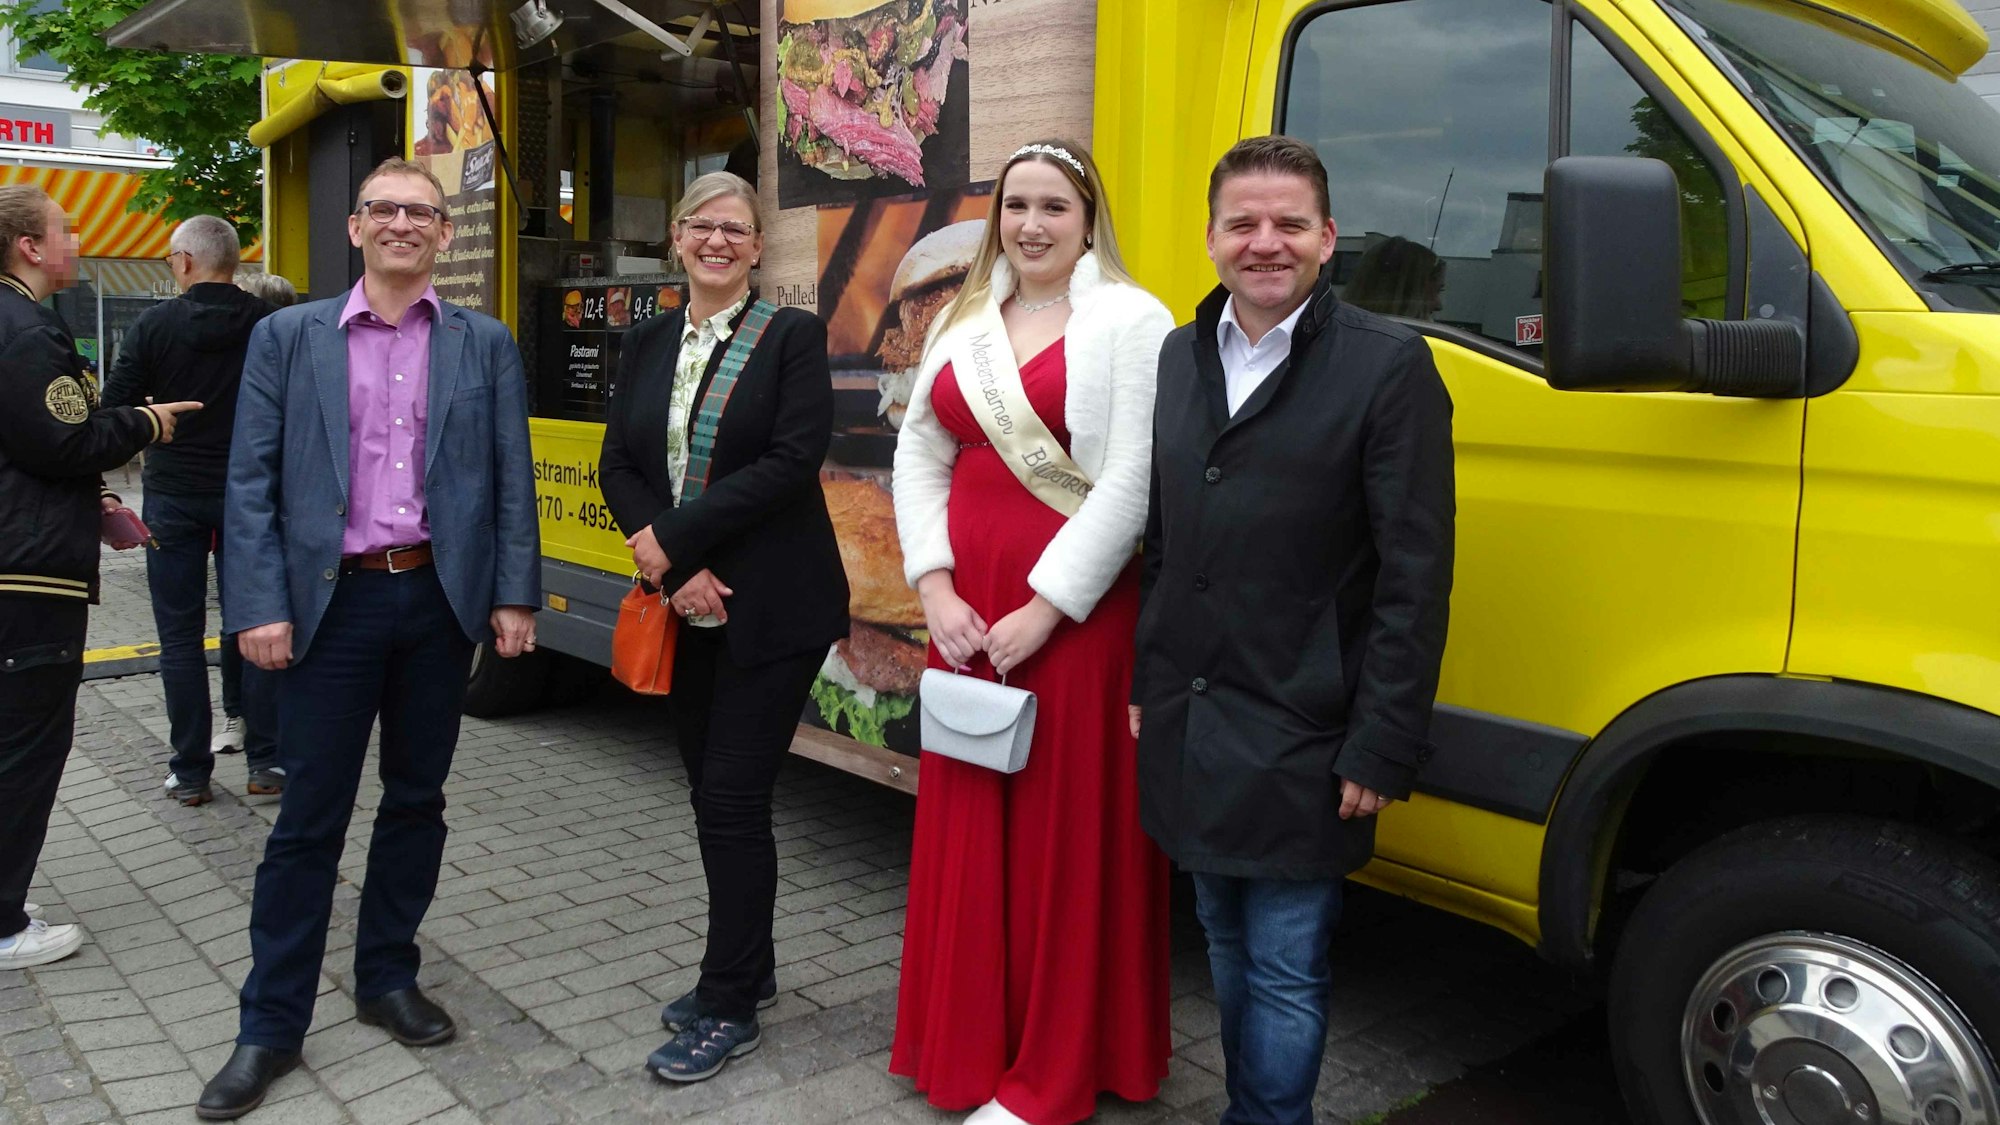 Zweites Street-Food-Festival in Meckenheim am Neuen Markt. Eröffnung mit Bürgermeister Holger Jung rechts mit Blütenkönigin Celina Kotz (daneben), Meckenheims Wirtschaftsförderer Dirk Schwindenhammer (links) und Citymanagerin Nicole Bangert.